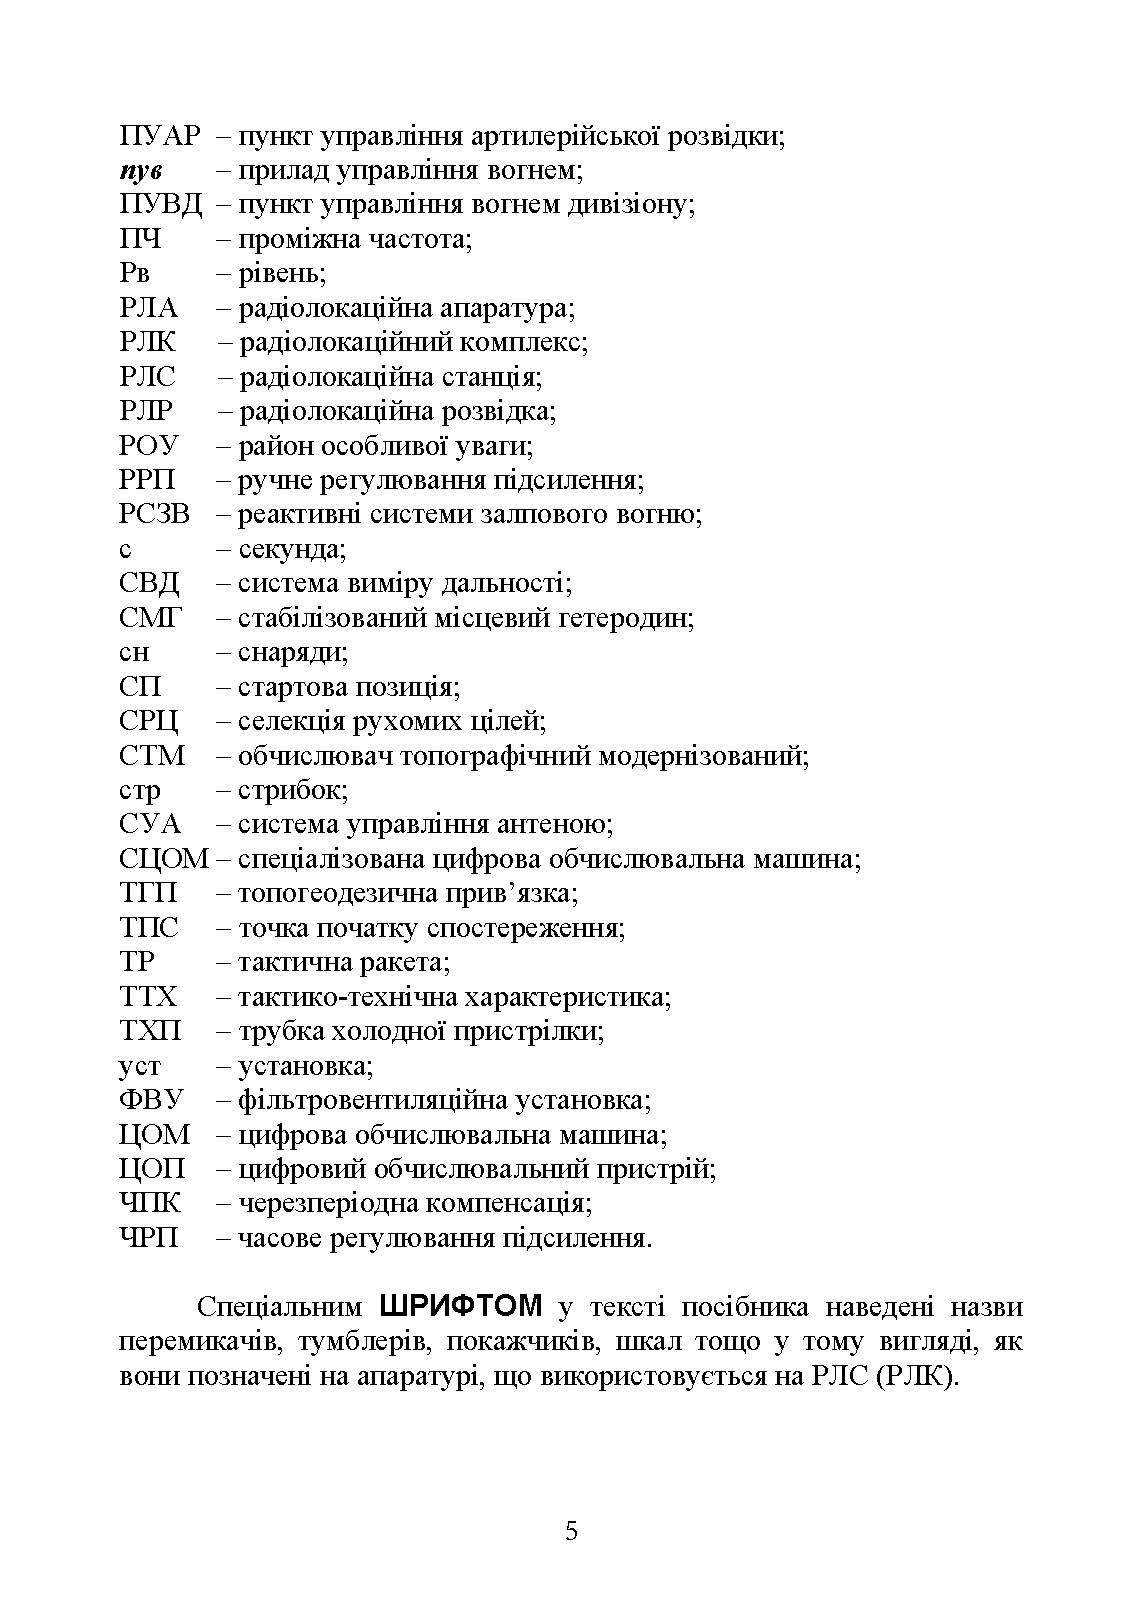 Бойова робота на радіолокаційних станціях (1РЛ232-1; 1РЛ239-1(М); 1РЛ133). Автор — М. П. Грицай, П. Є. Трофименко. 